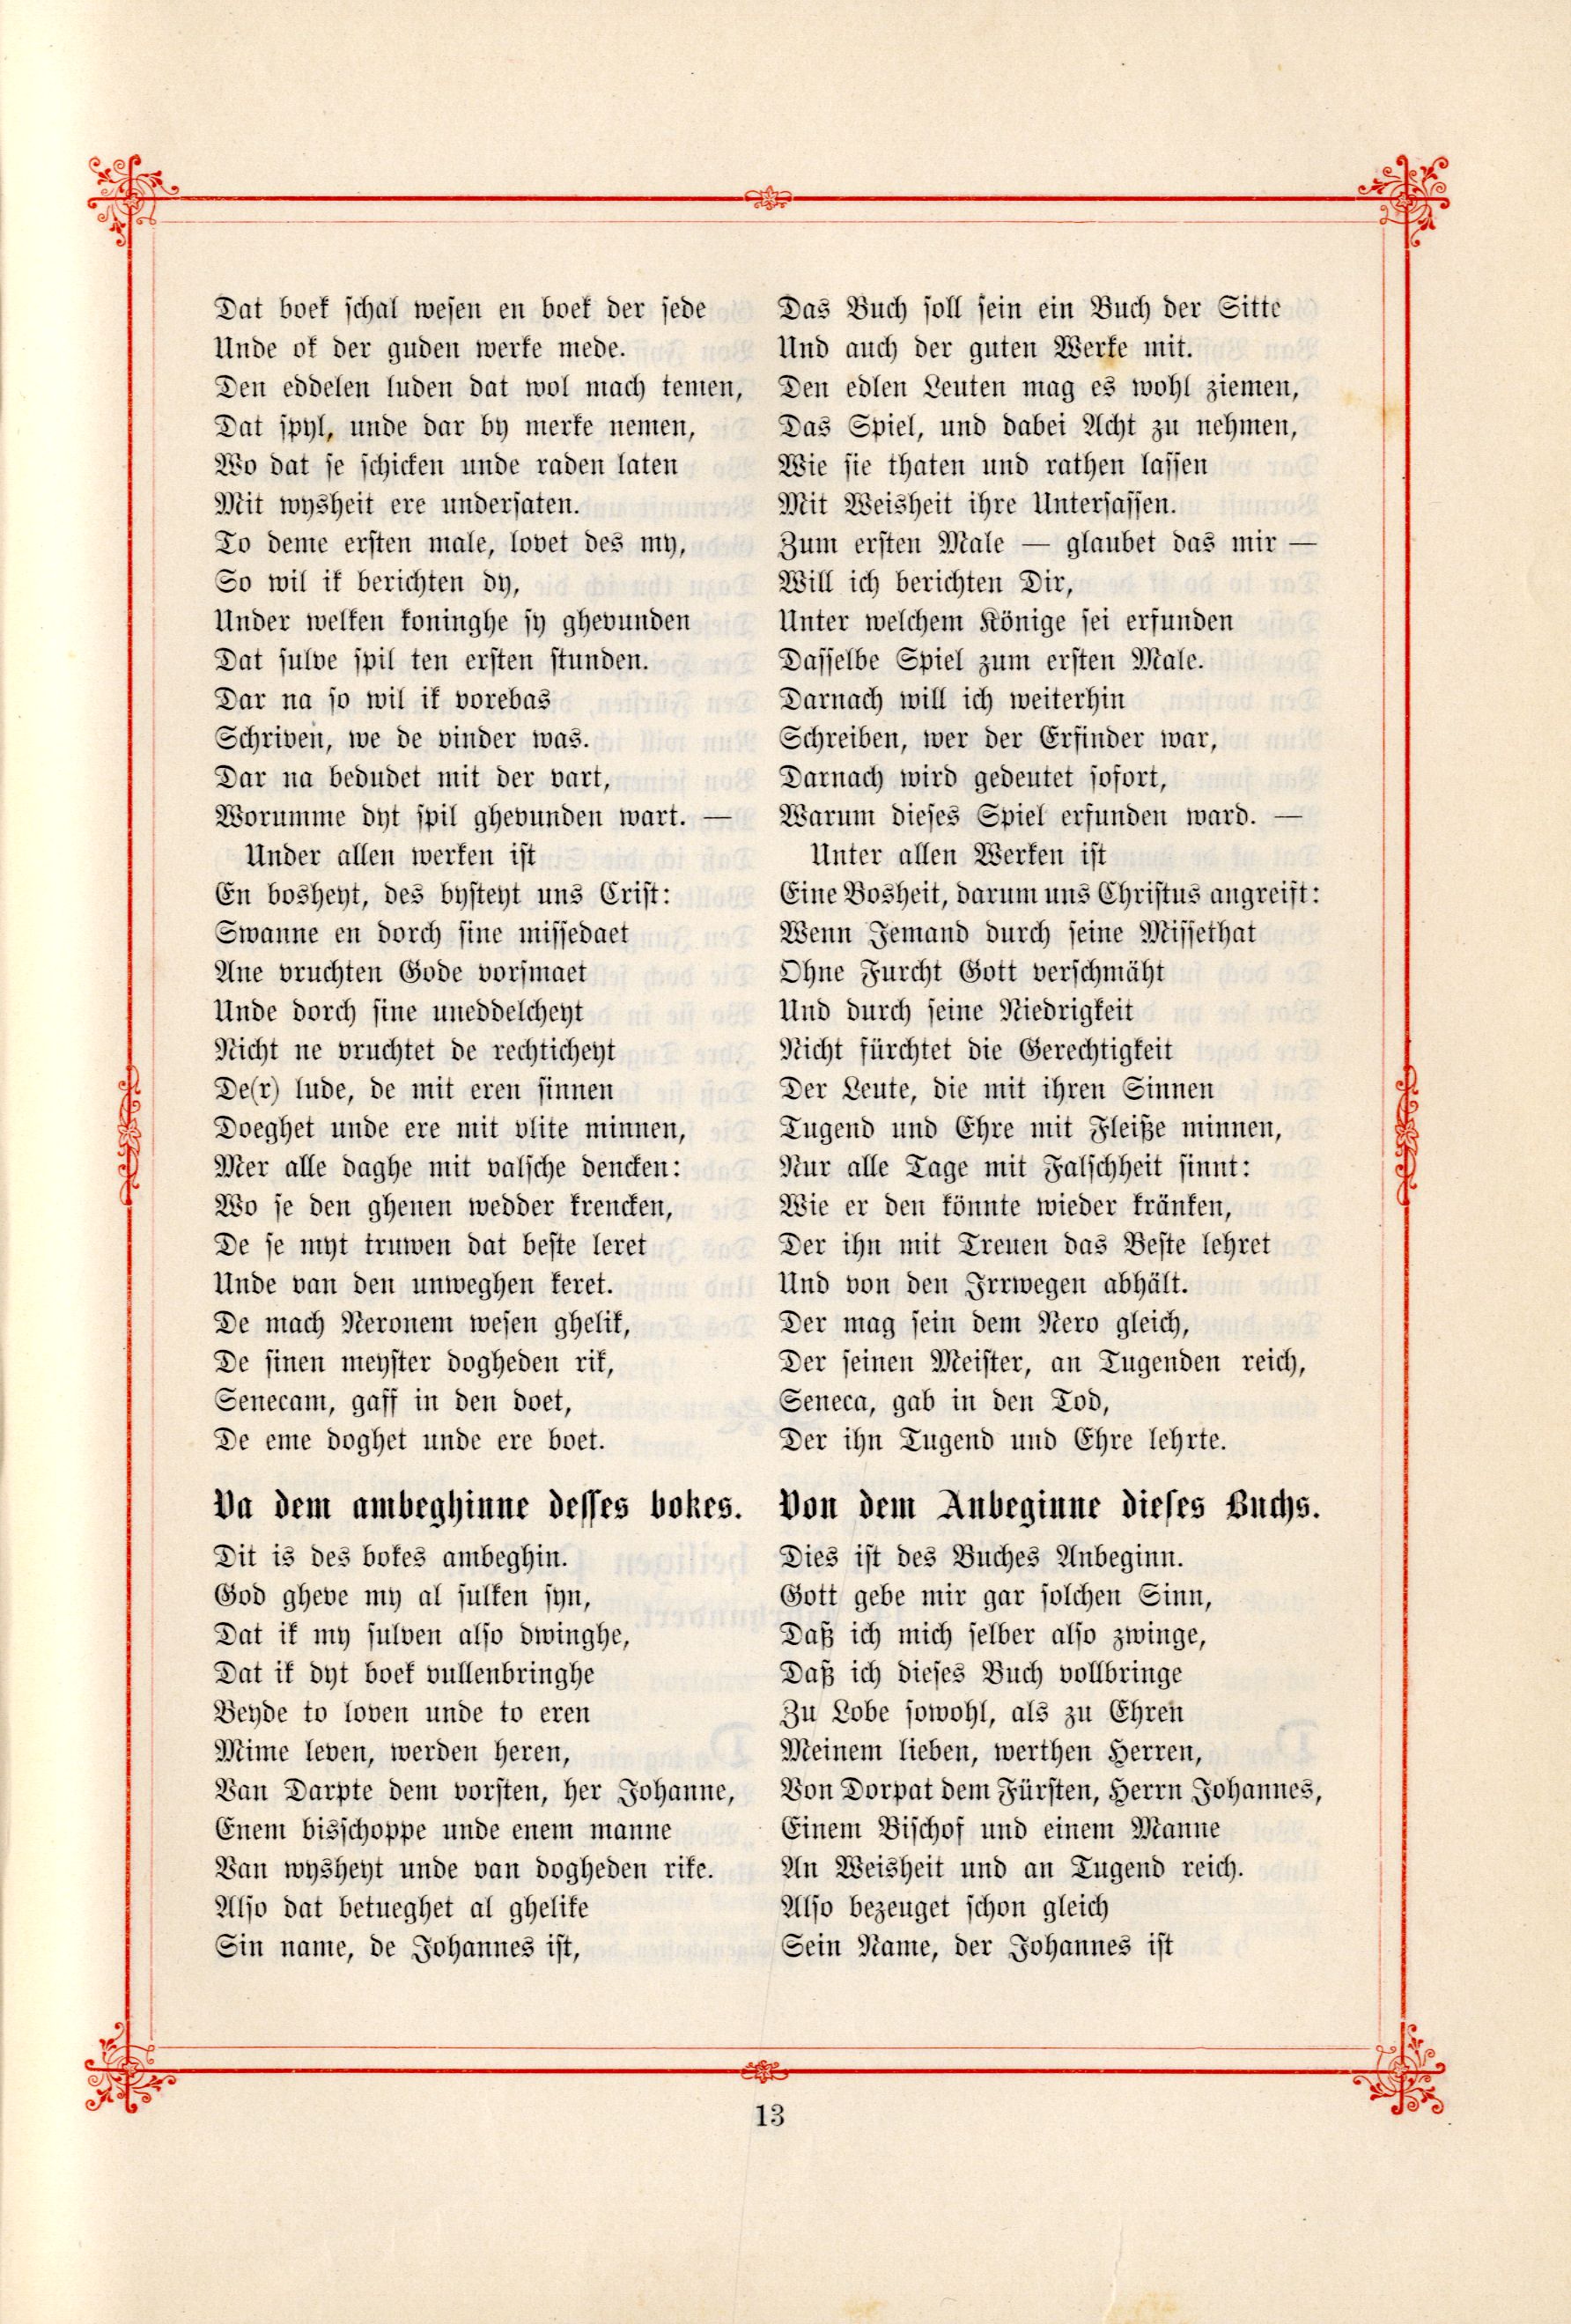 Das Baltische Dichterbuch (1895) | 59. (13) Main body of text